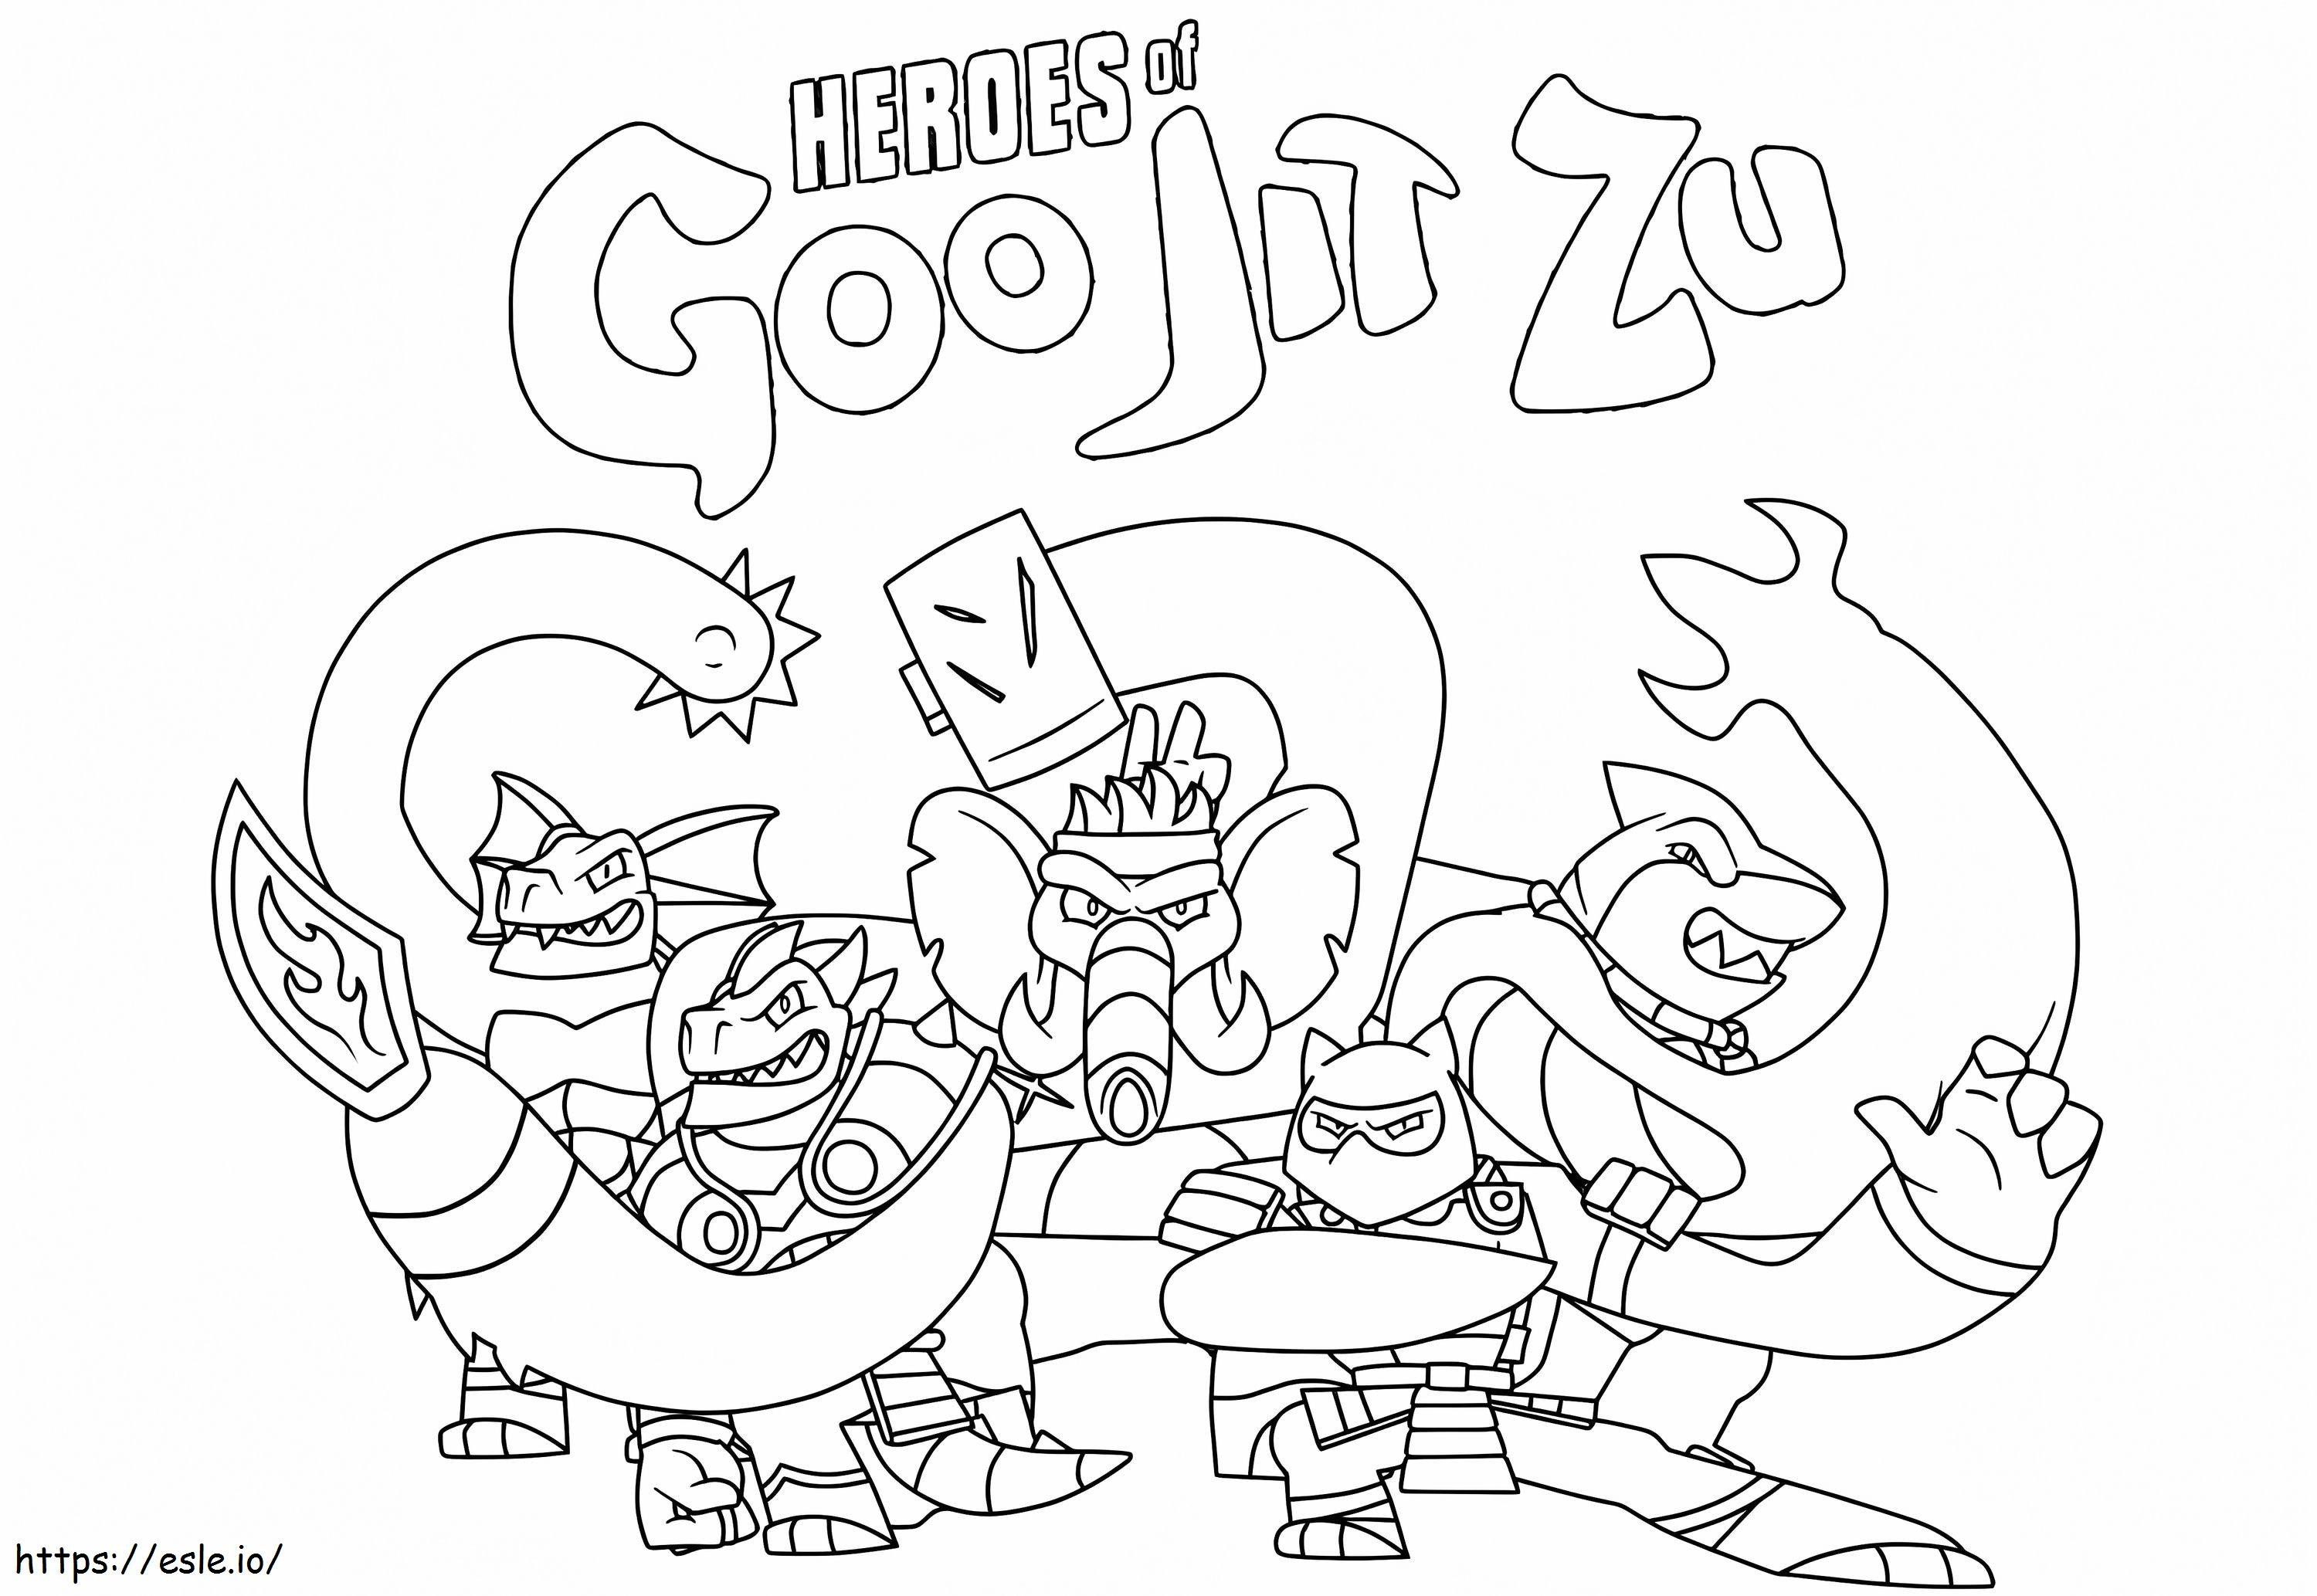 Heroes Of Goo Jit Zu coloring page